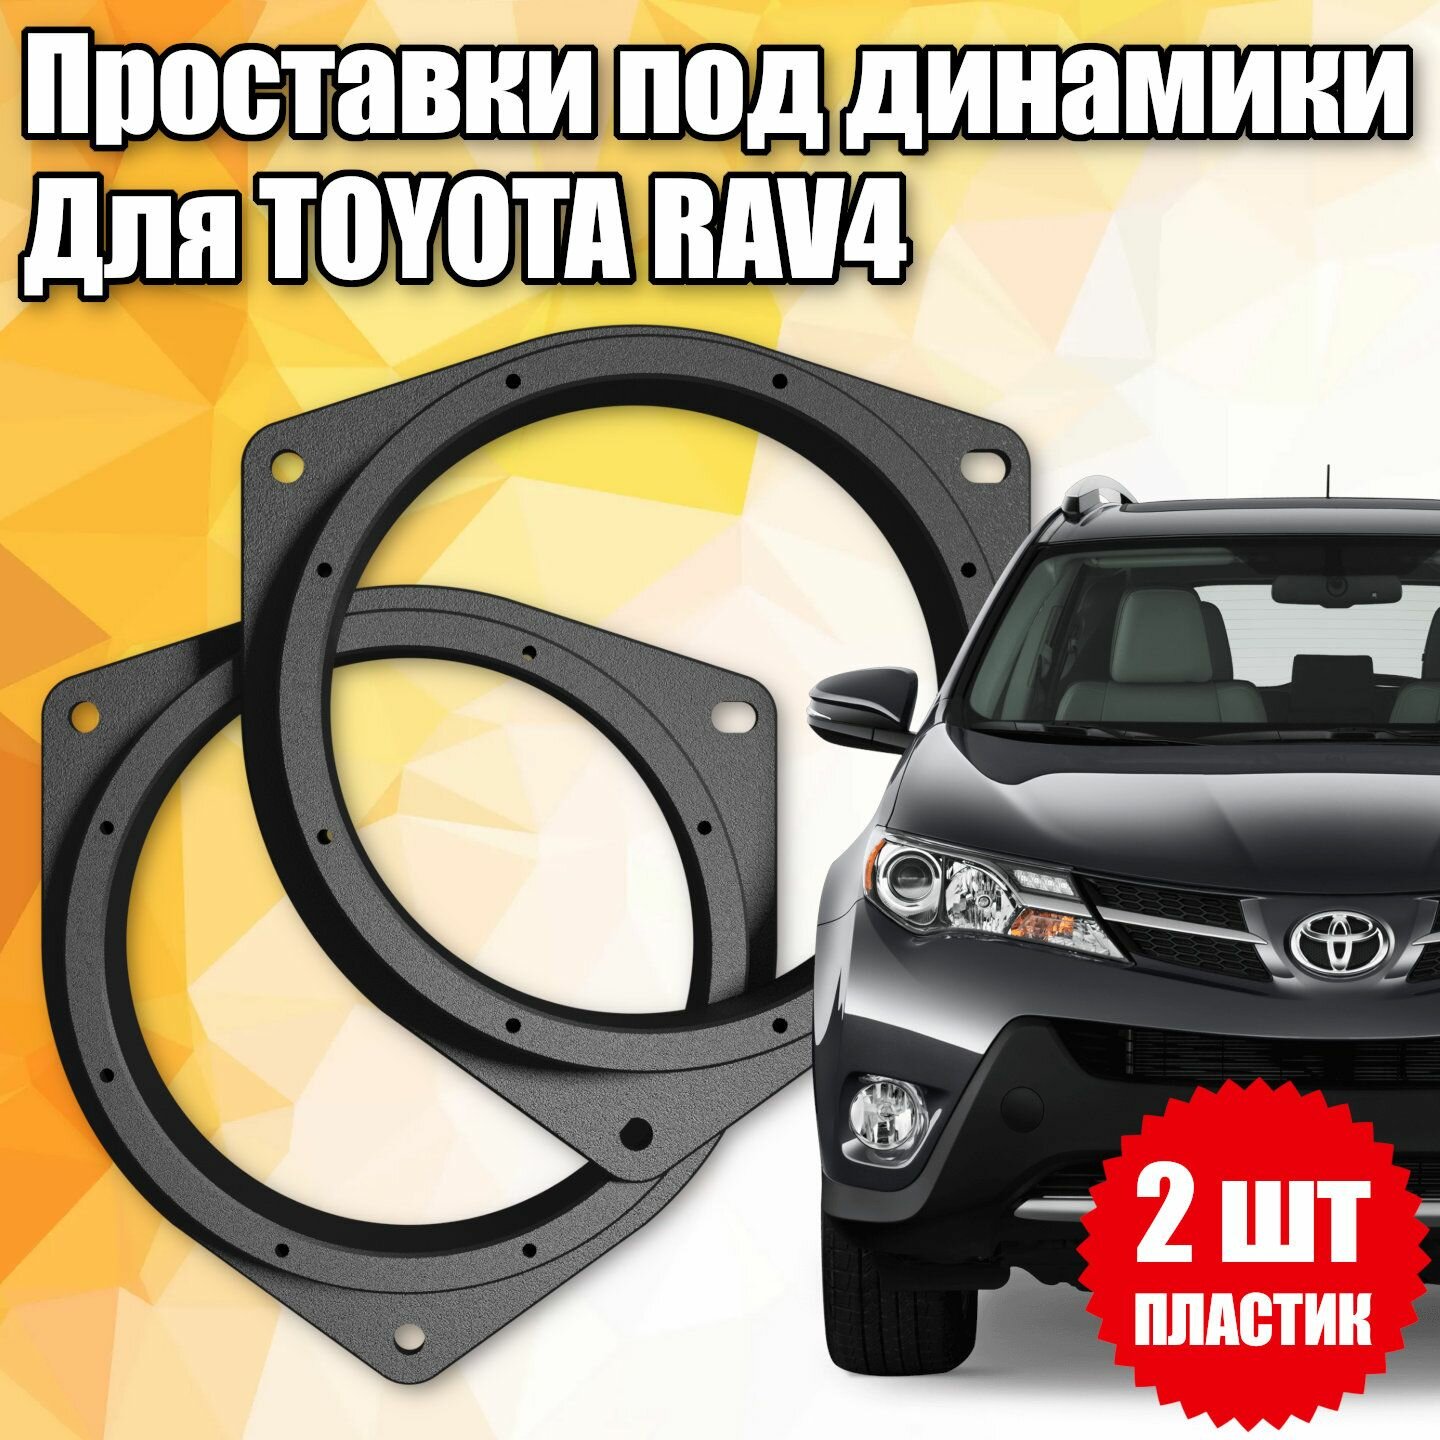 Проставки под динамики для Toyota RAV4